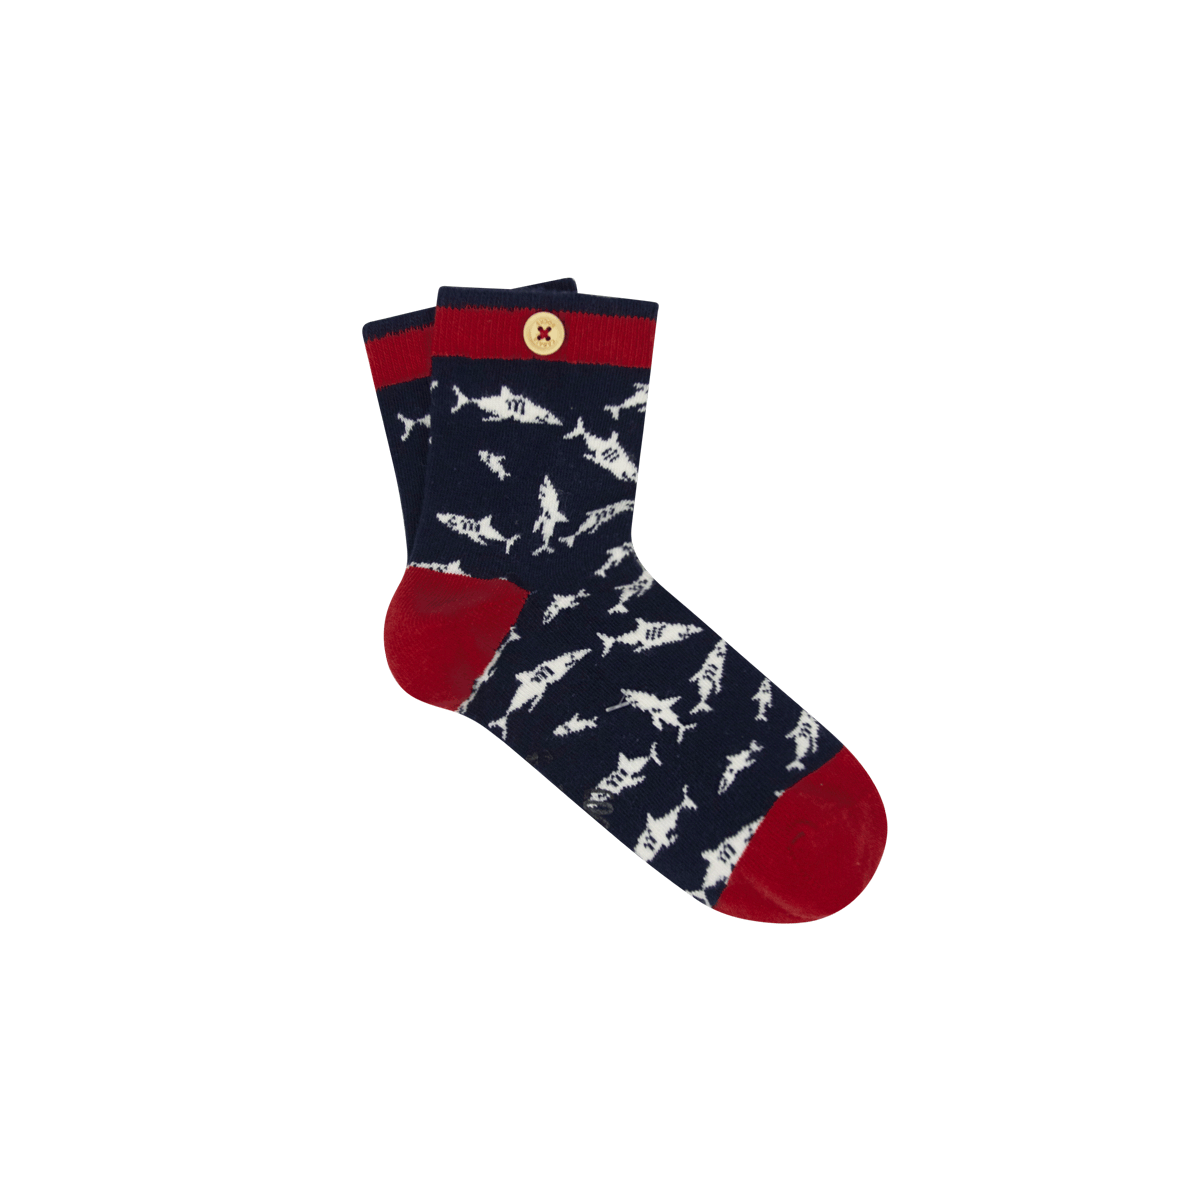 unlosable-socks-wood-button-kids-sockkids20-jule